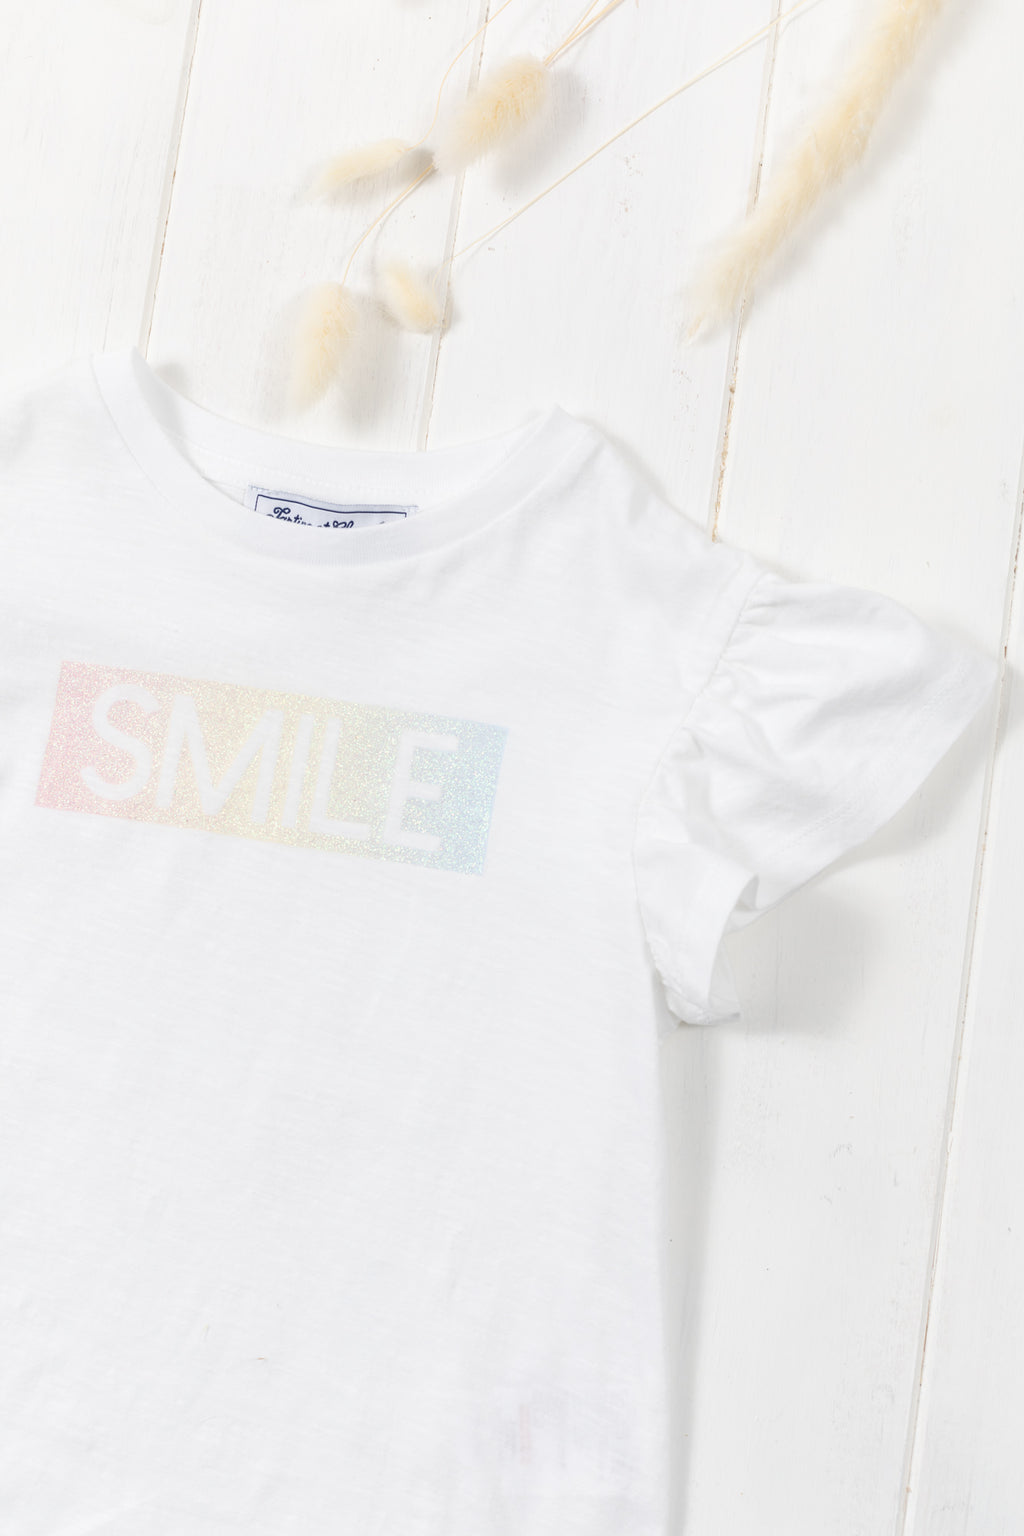 Camiseta - Jersey Blanco sonrisa